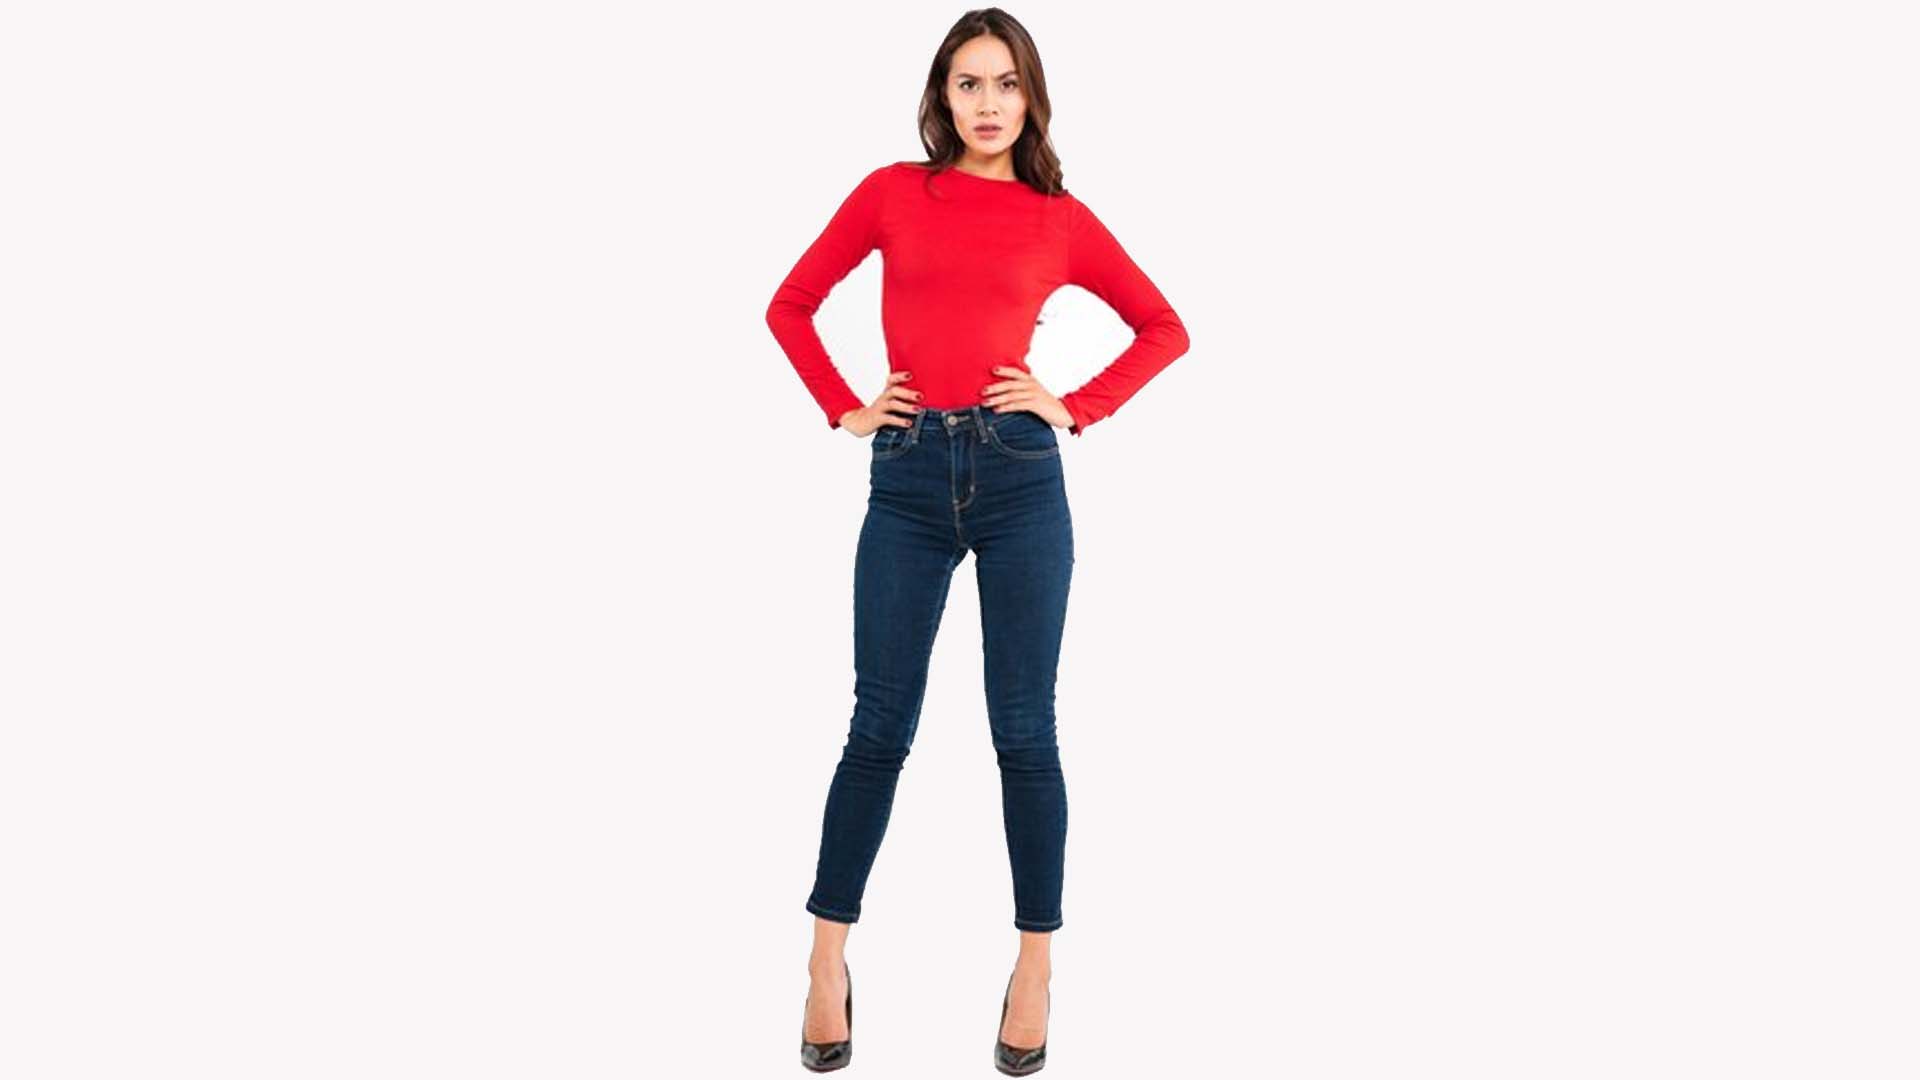 Women wearing jeans